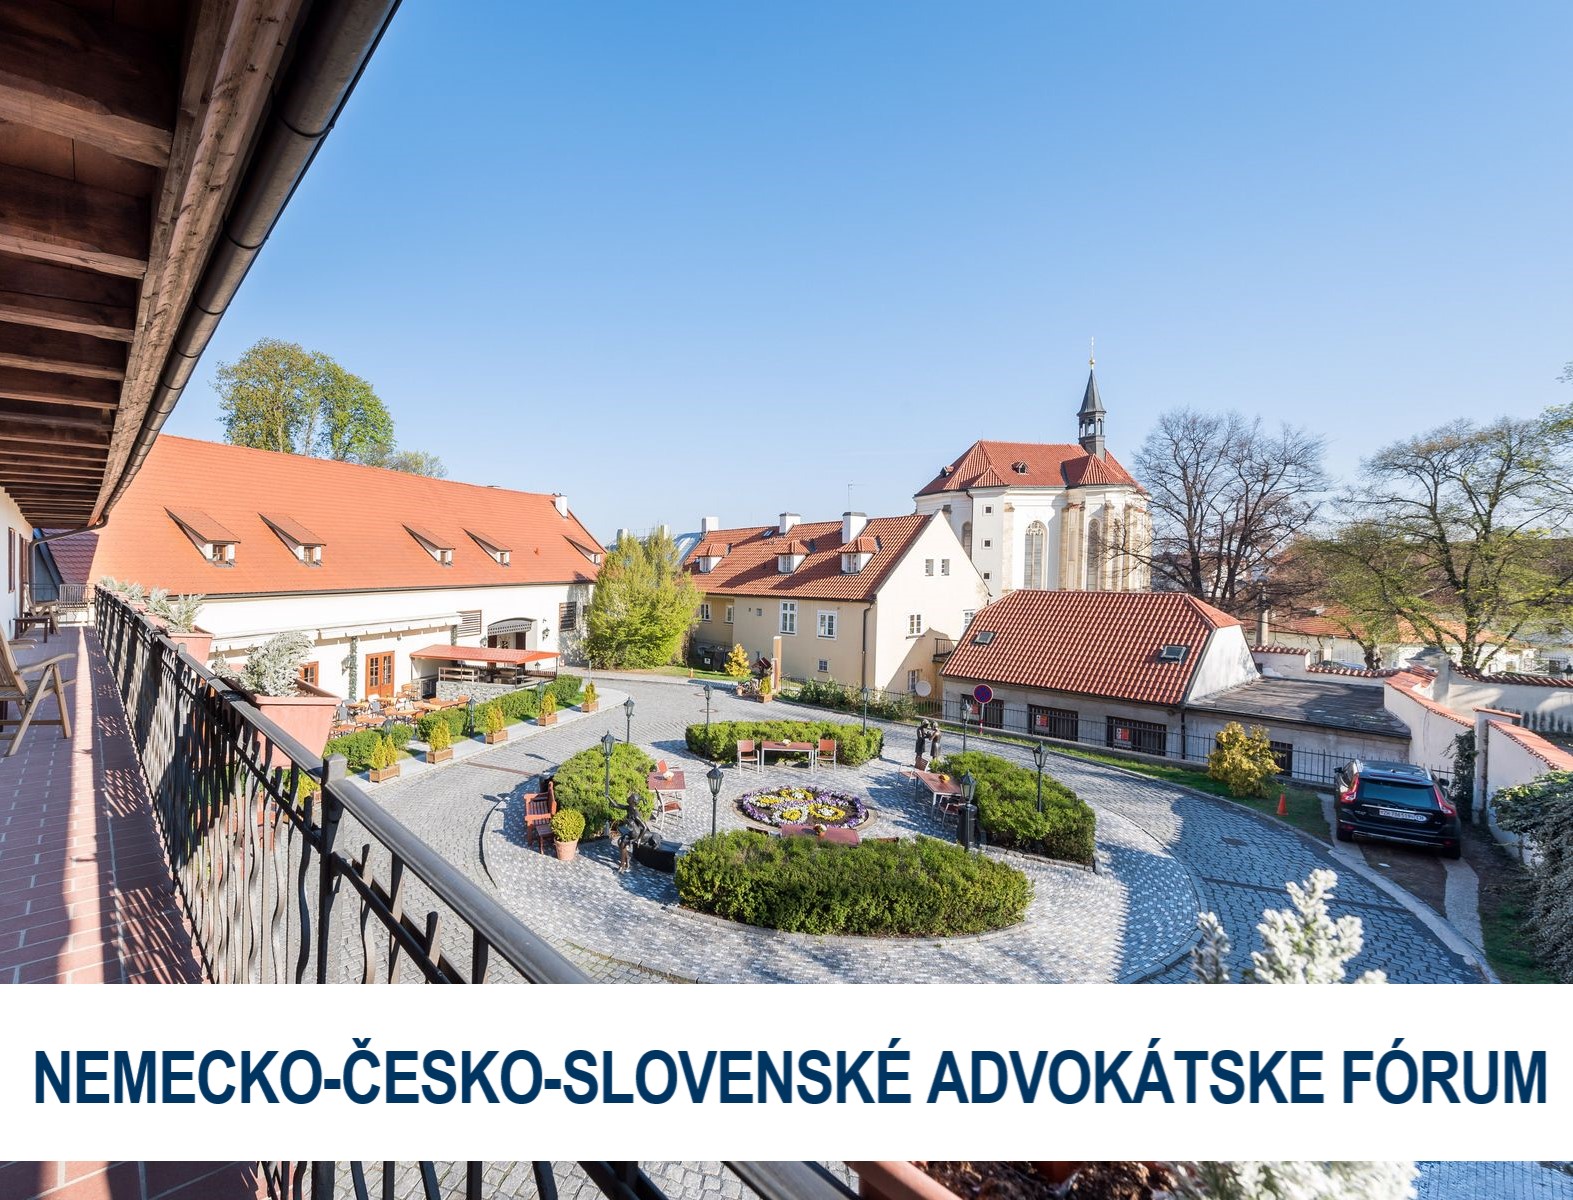 NEMECKO-ČESKO-SLOVENSKÉ ADVOKÁTSKE FÓRUM 2022